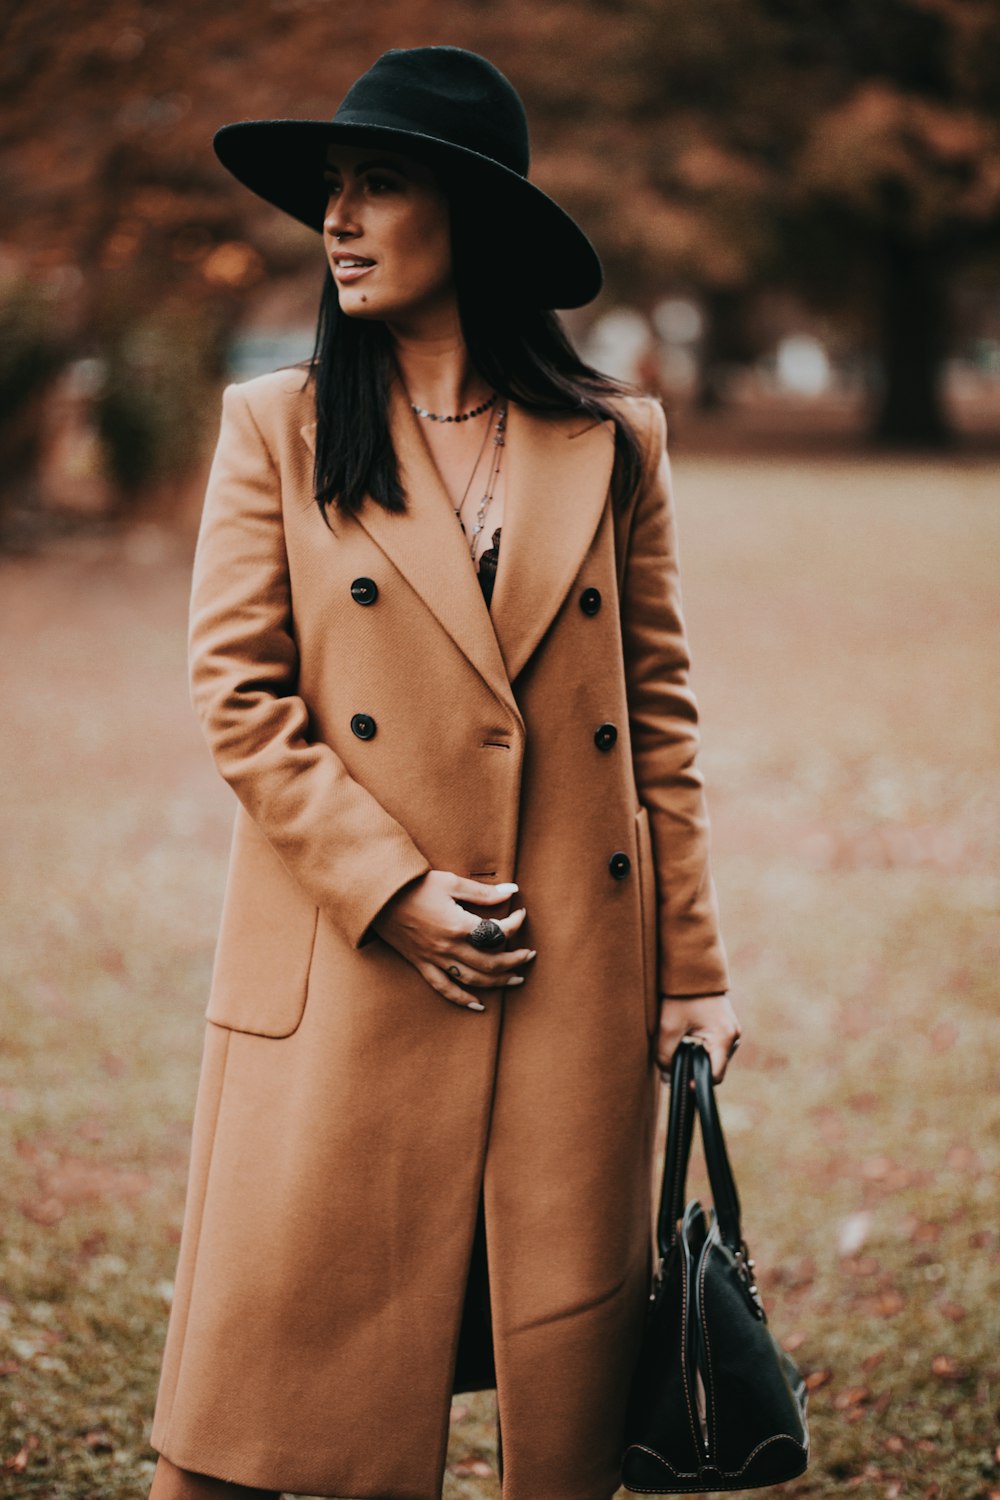 femme en manteau brun debout sur un champ brun pendant la journée